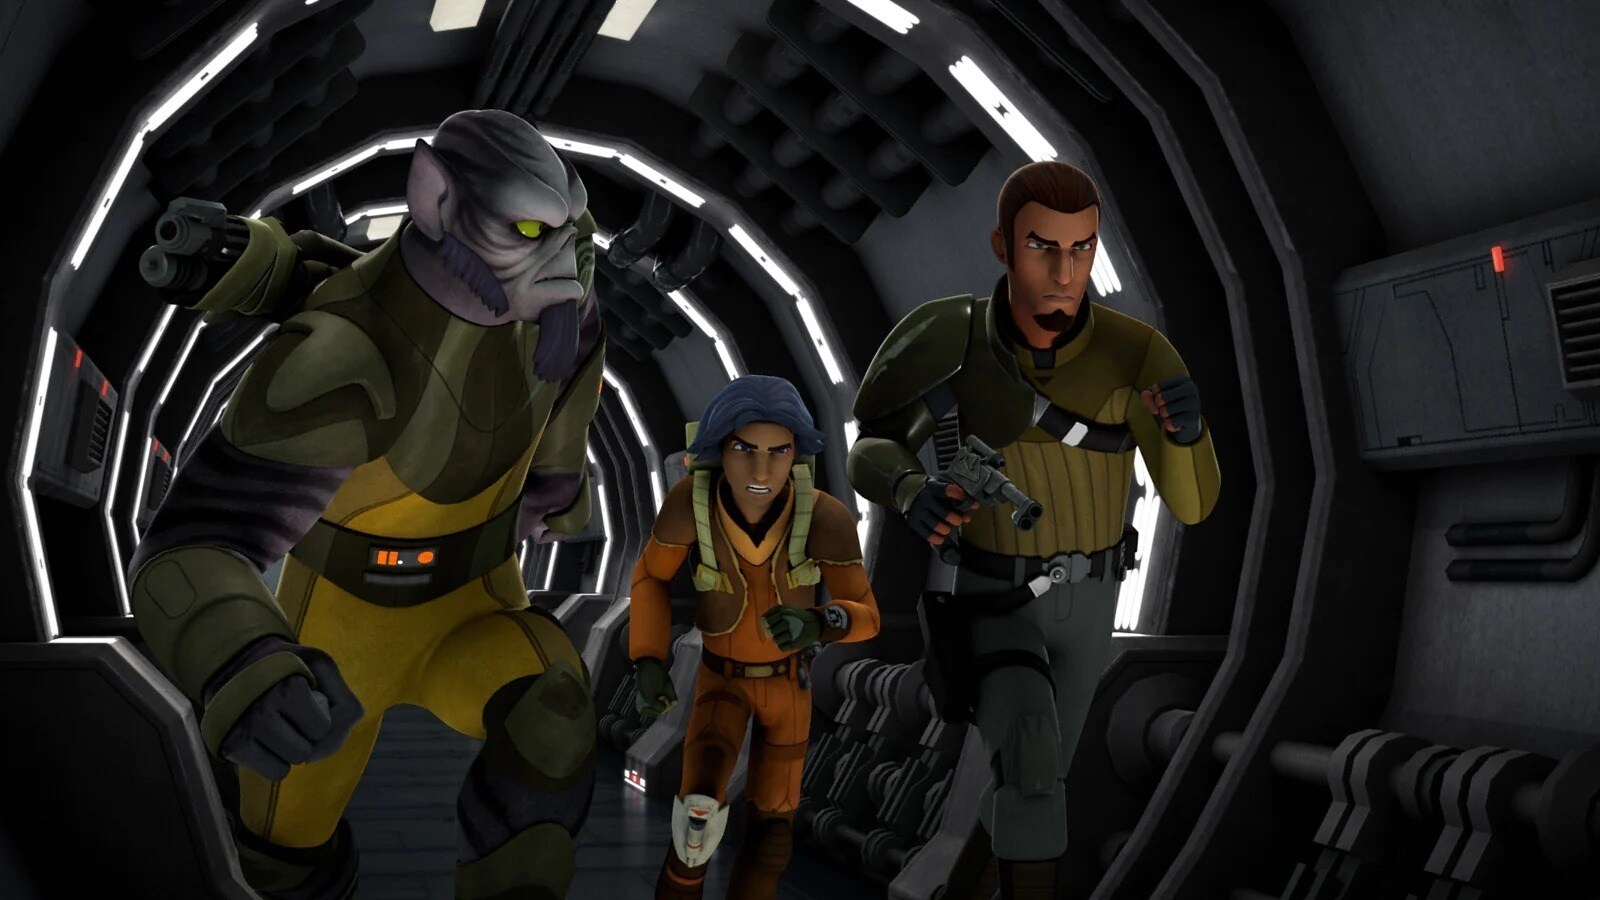 Ezra Bridger, Kanan and Zeb in Star Wars Rebels